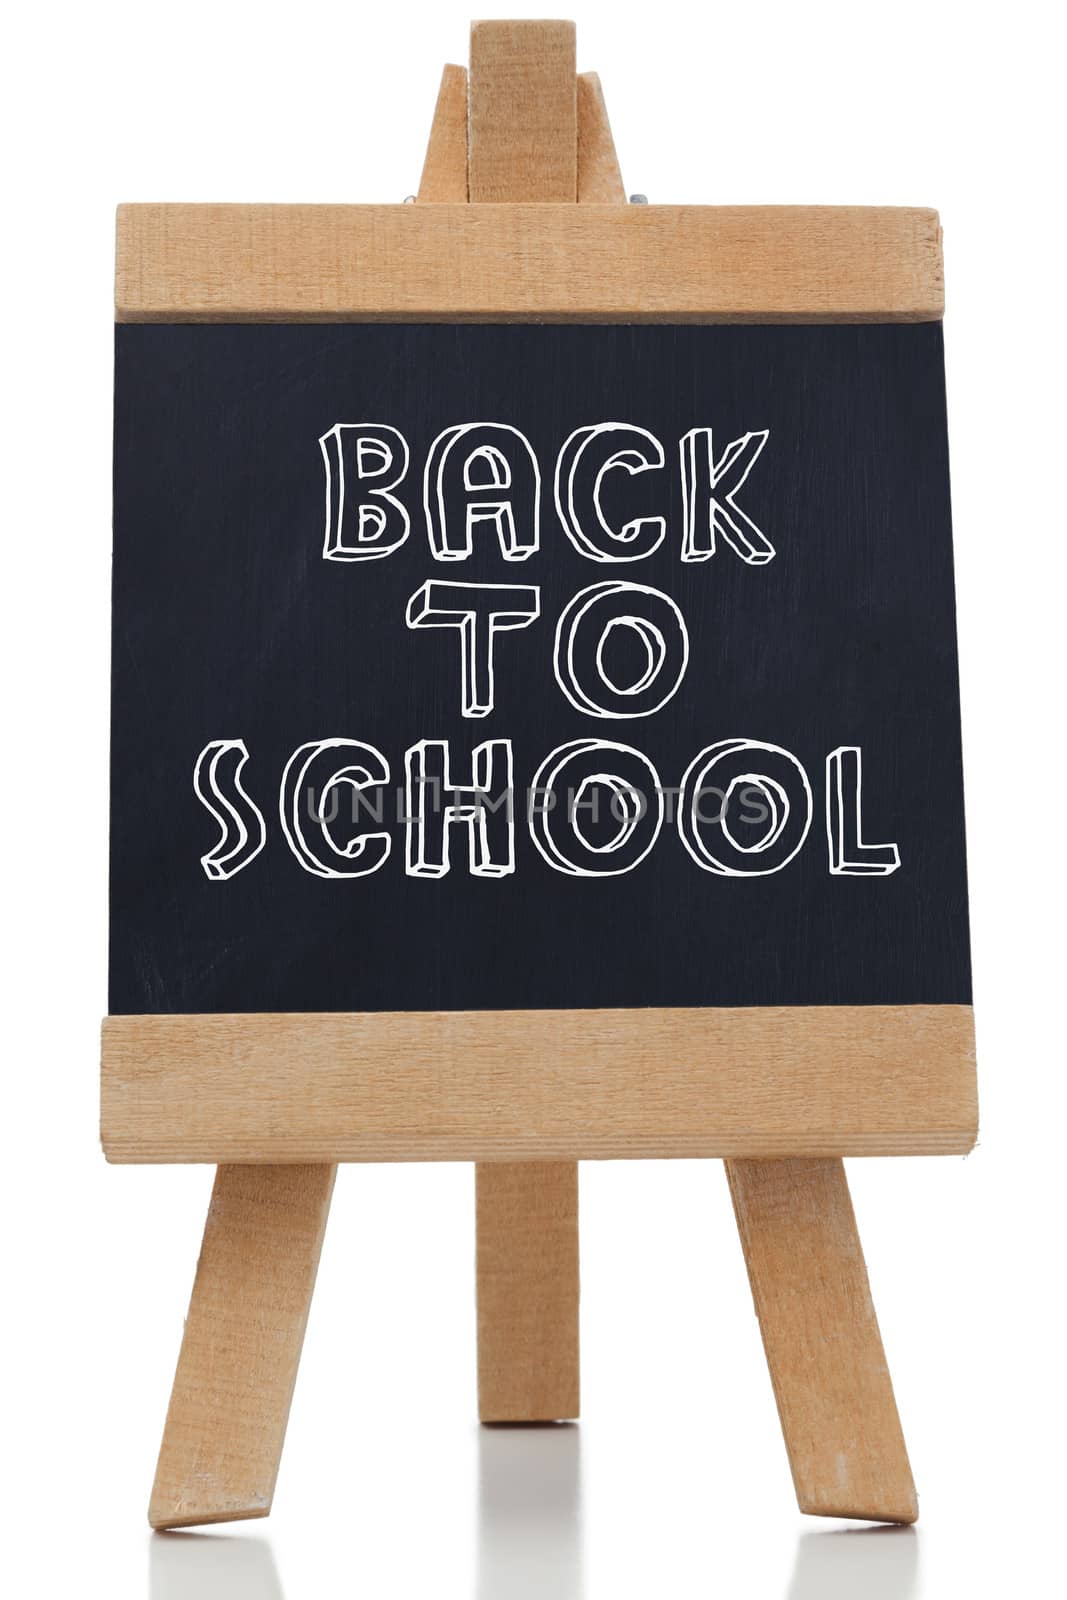 Back to school written on chalkboard by Wavebreakmedia